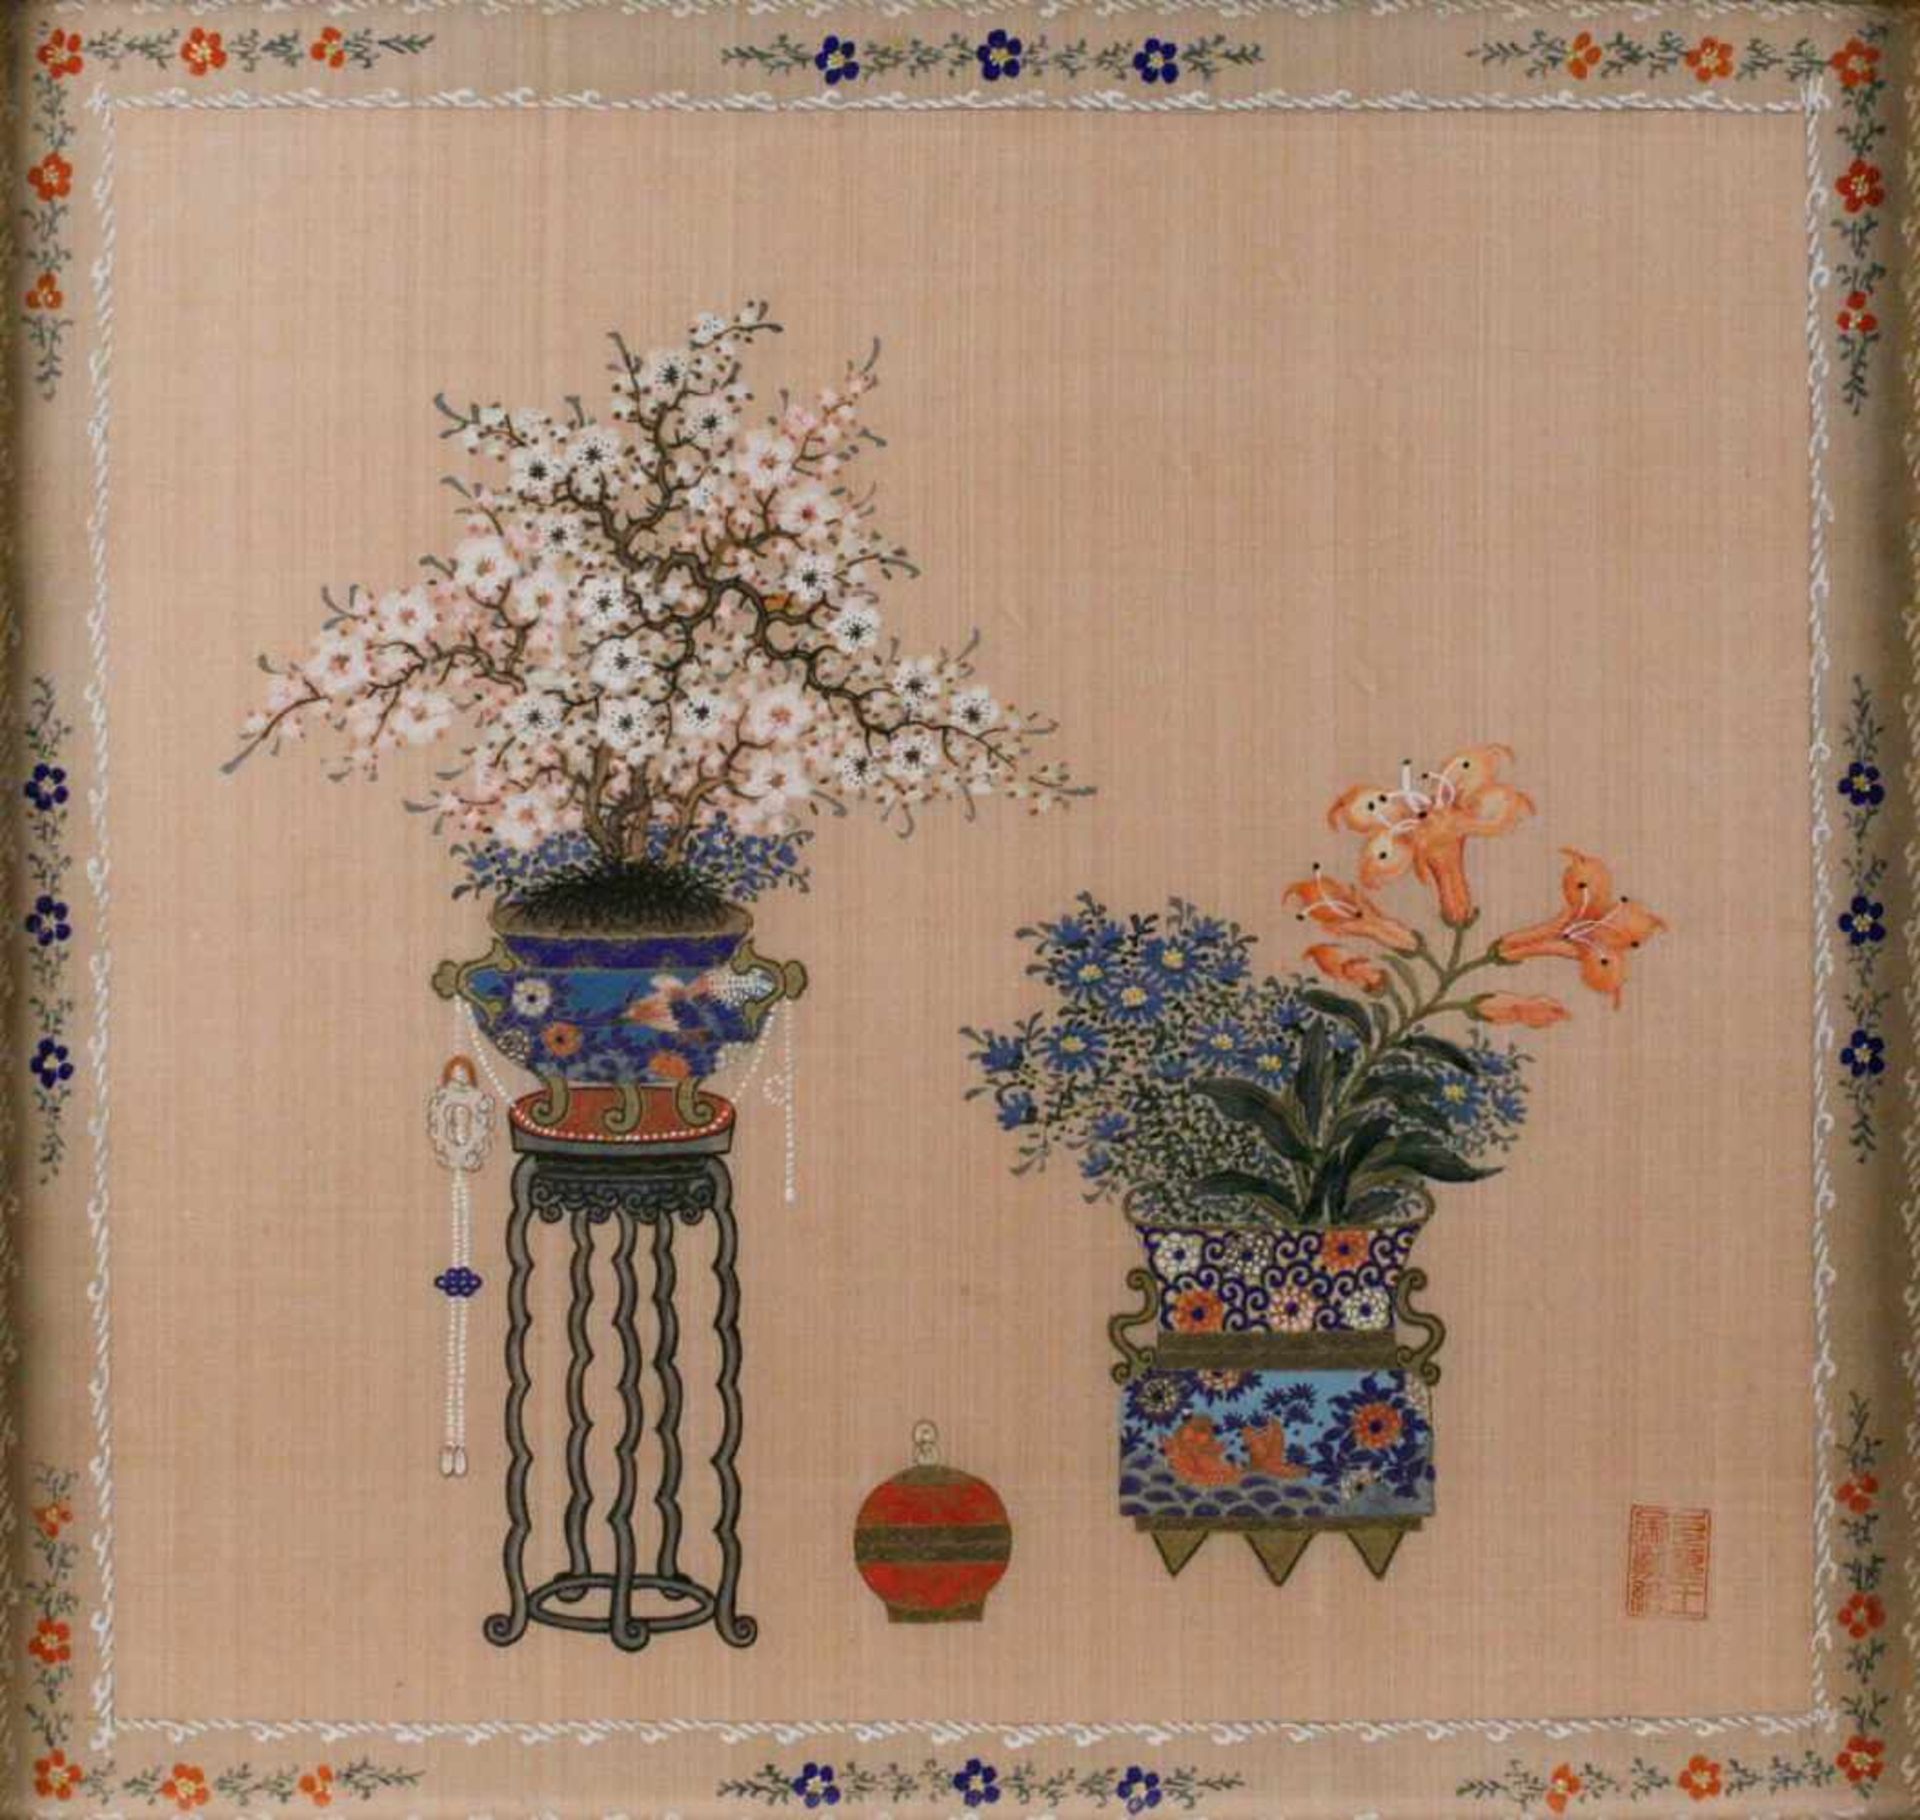 ASIATIKABONSAI IN DER PFLAUMENBLÜTE MIT LILIEN China um 1900 Seidenmalerei. Sichtmaß 37 x 38 cm.